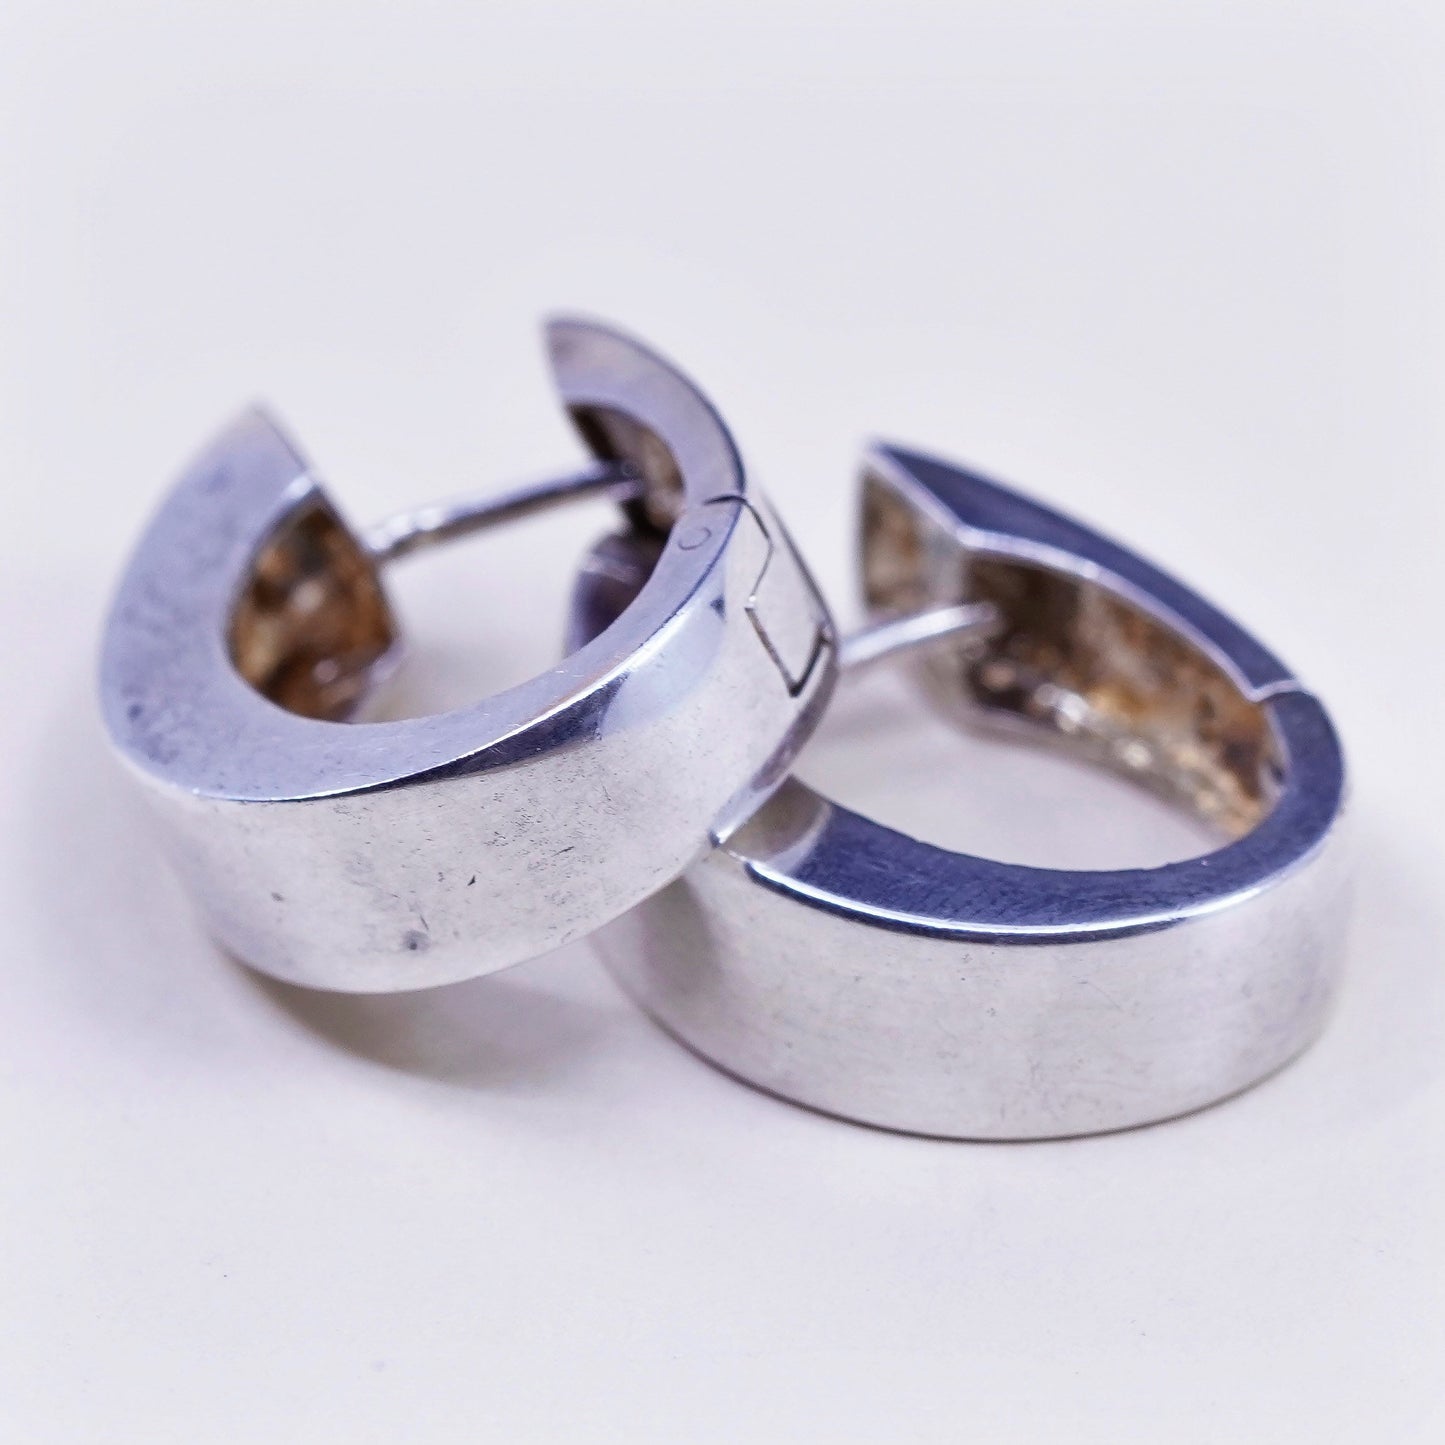 0.75”, Vintage sterling 925 silver loop earrings, simple primitive hoops